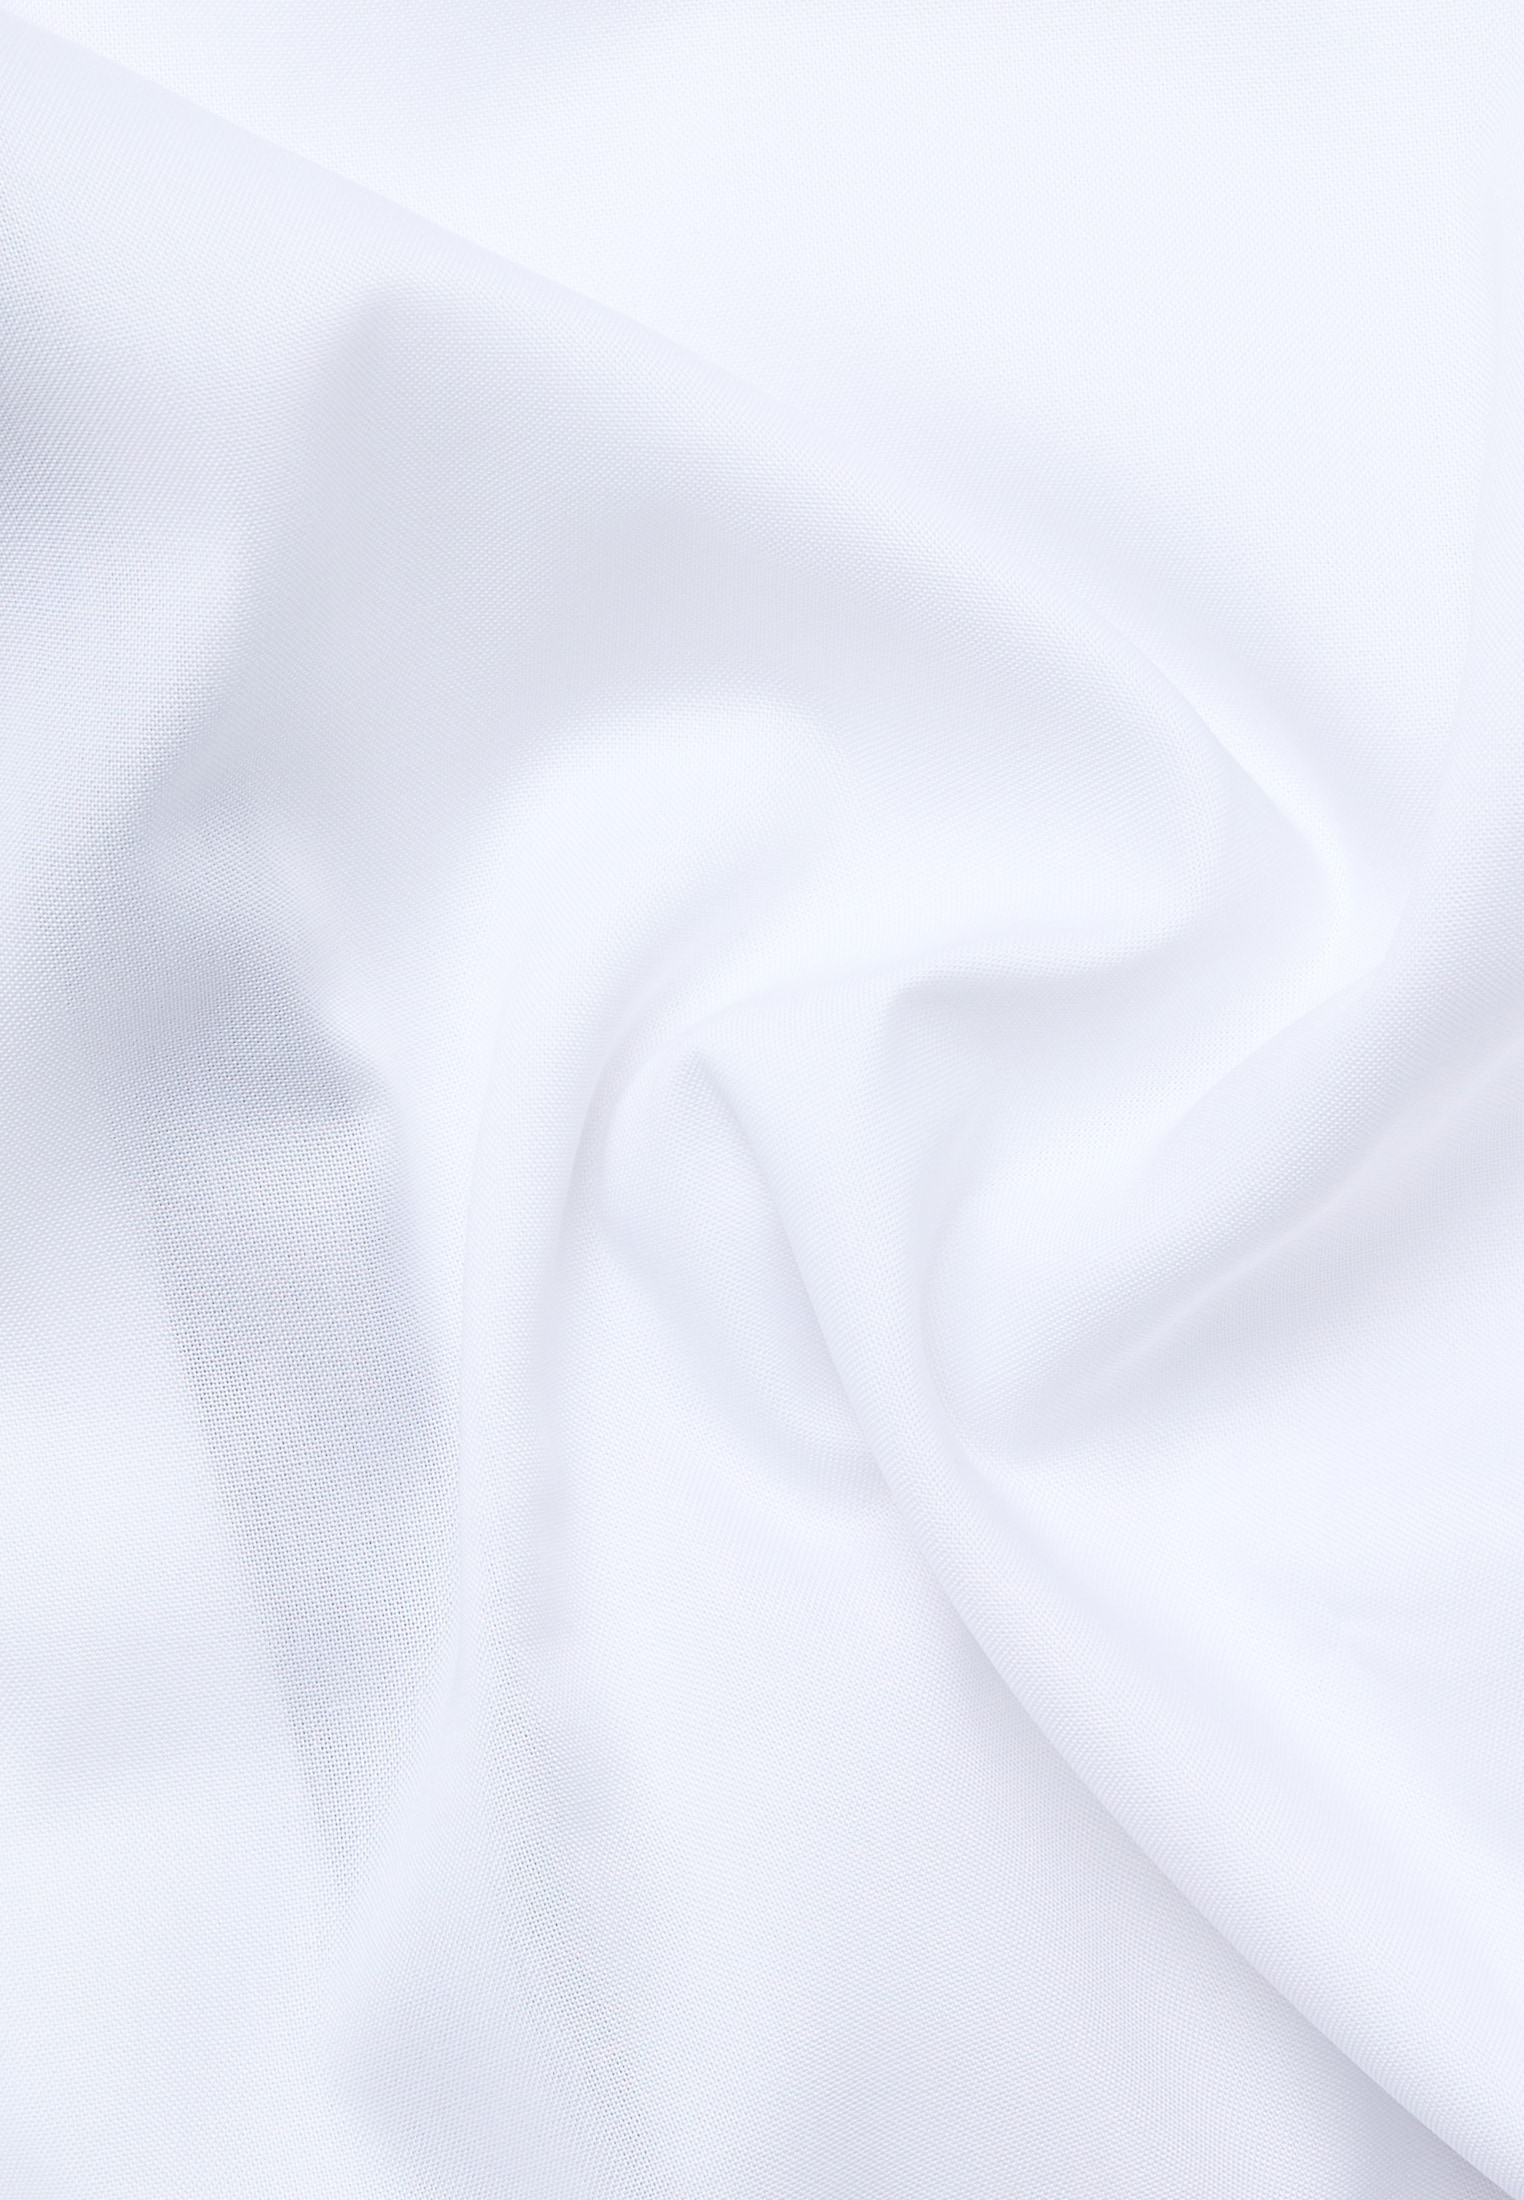 Langarm weiß | | FIT 1SH04620-00-01-44-1/1 in 44 weiß Hemd | | COMFORT unifarben